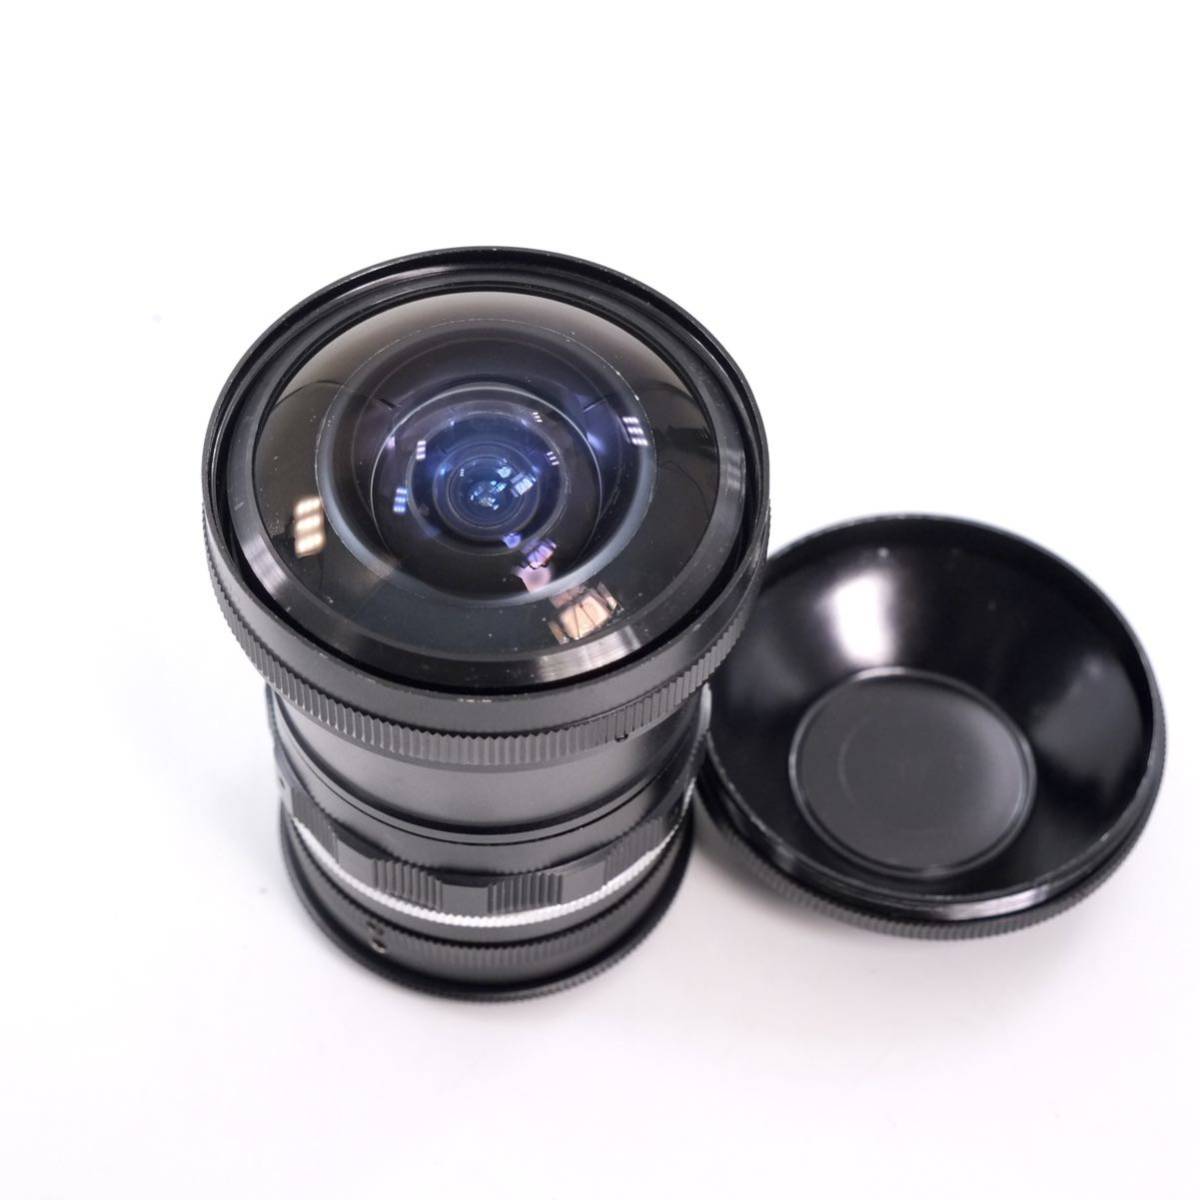 Kenko Kenko FISH-EYE 0.16X fish eye lens 49mm screw mount attaching 